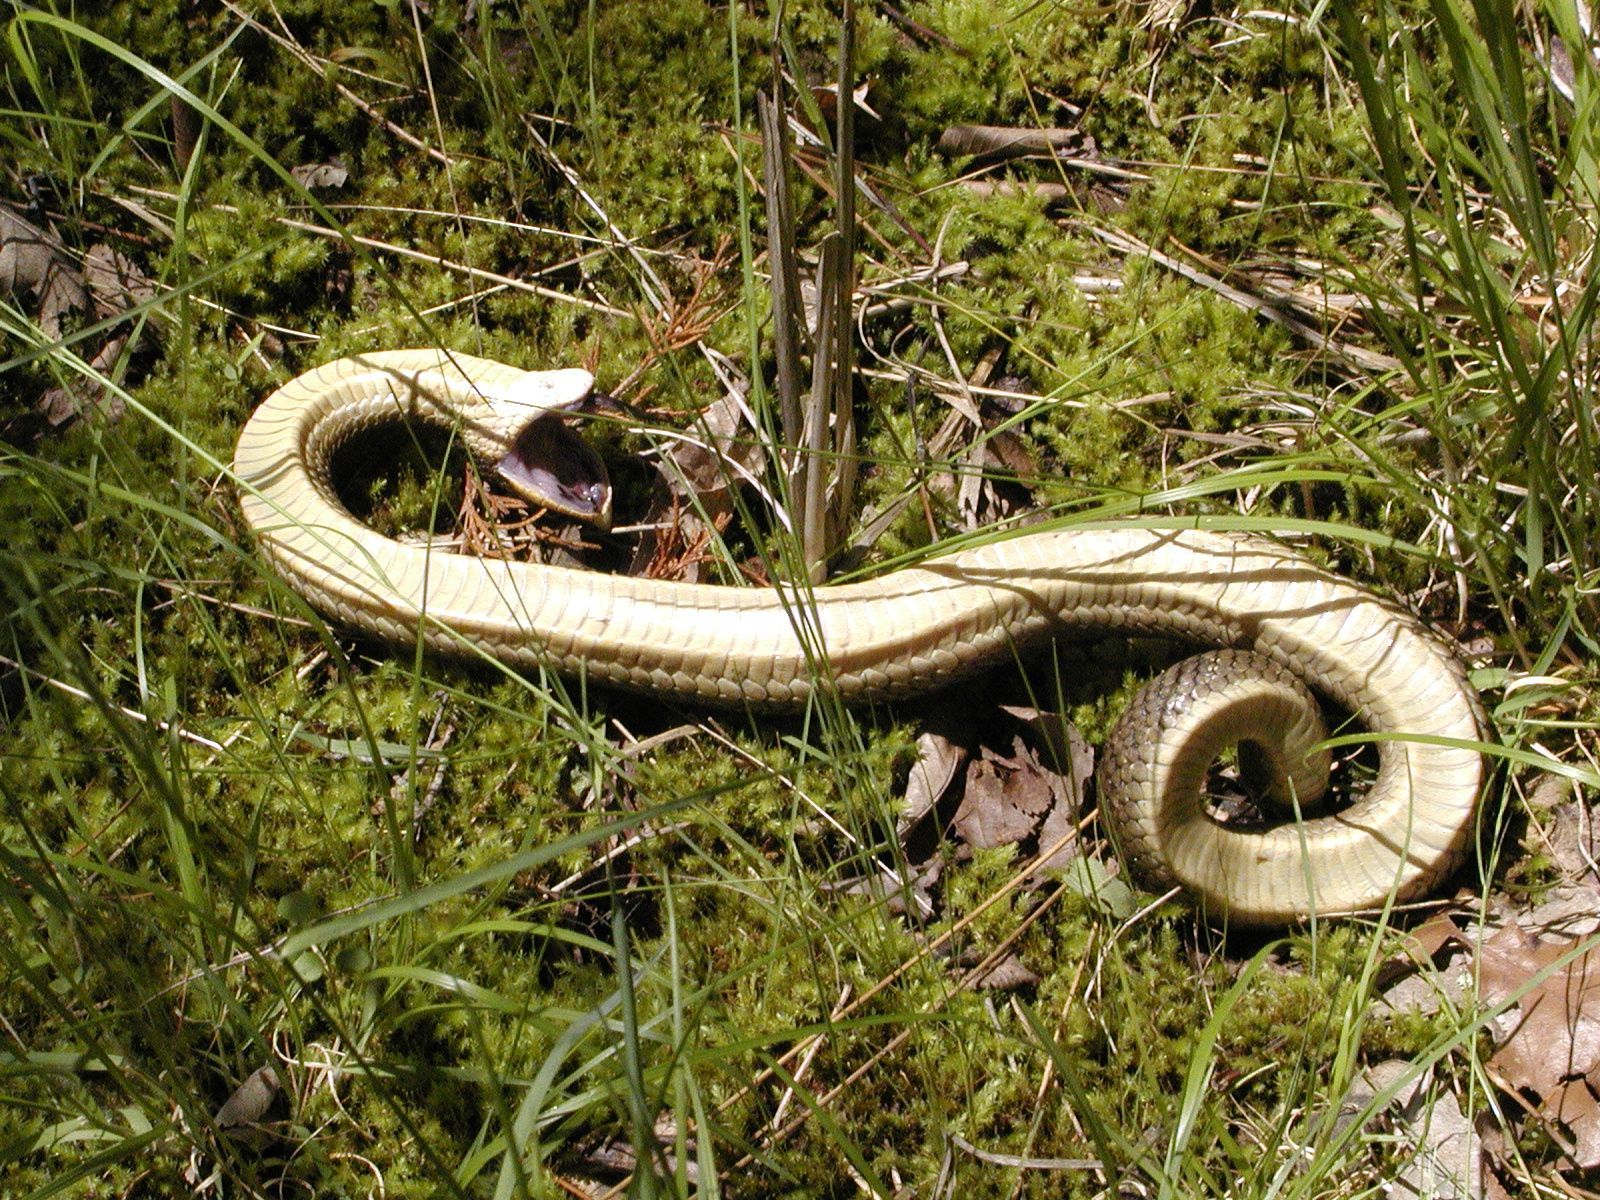 Eastern Hognose Snake, Eastern Hognose Snake playing dead. …